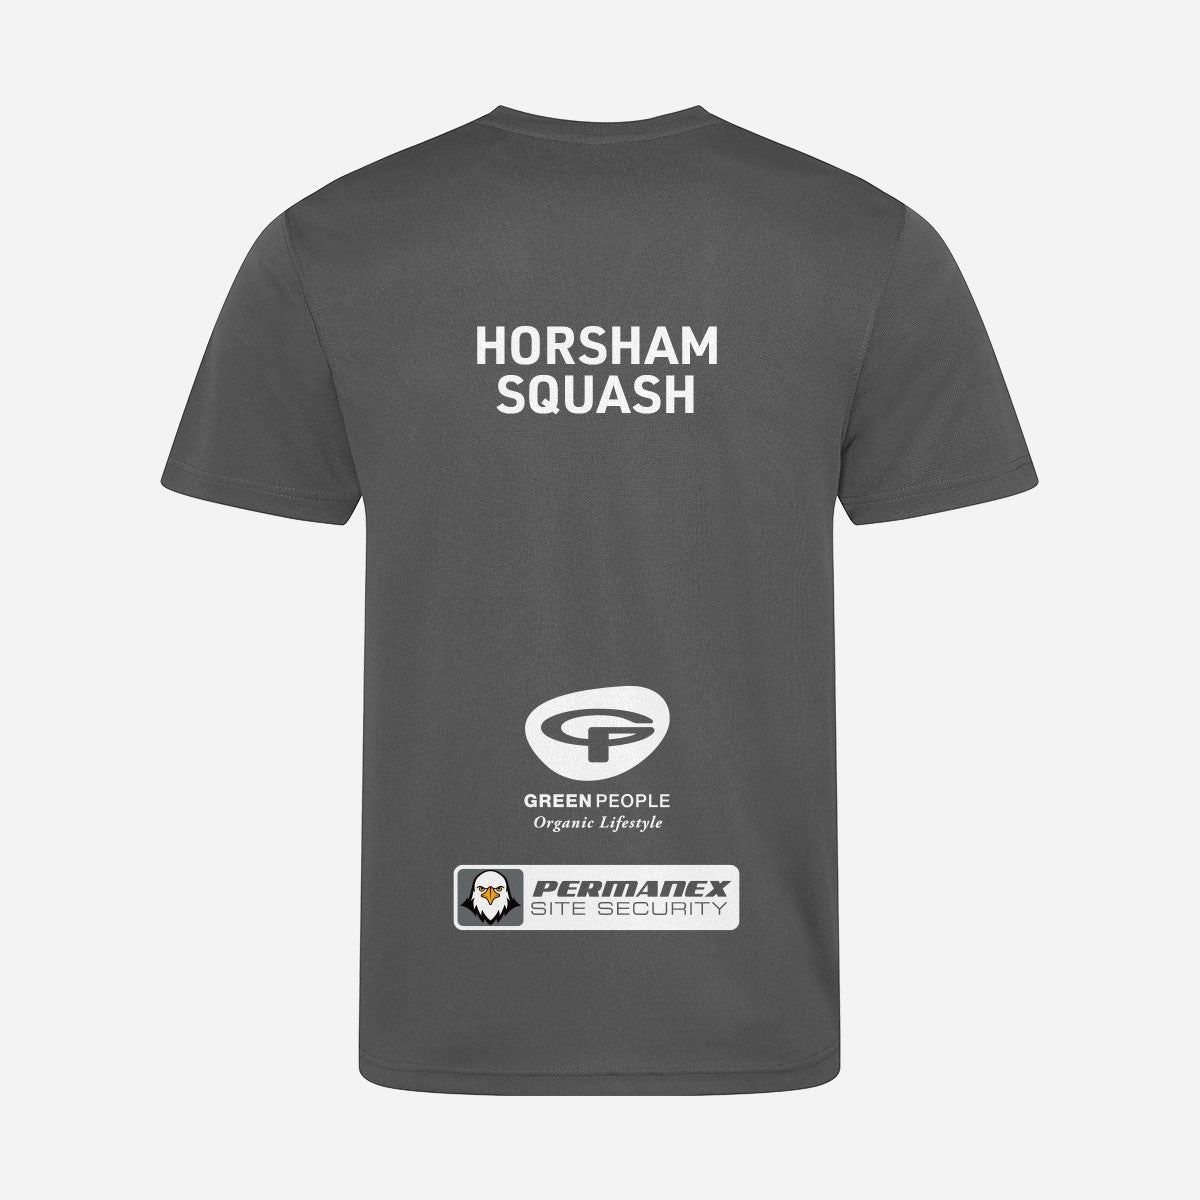 Horsham Squash Club Cool T